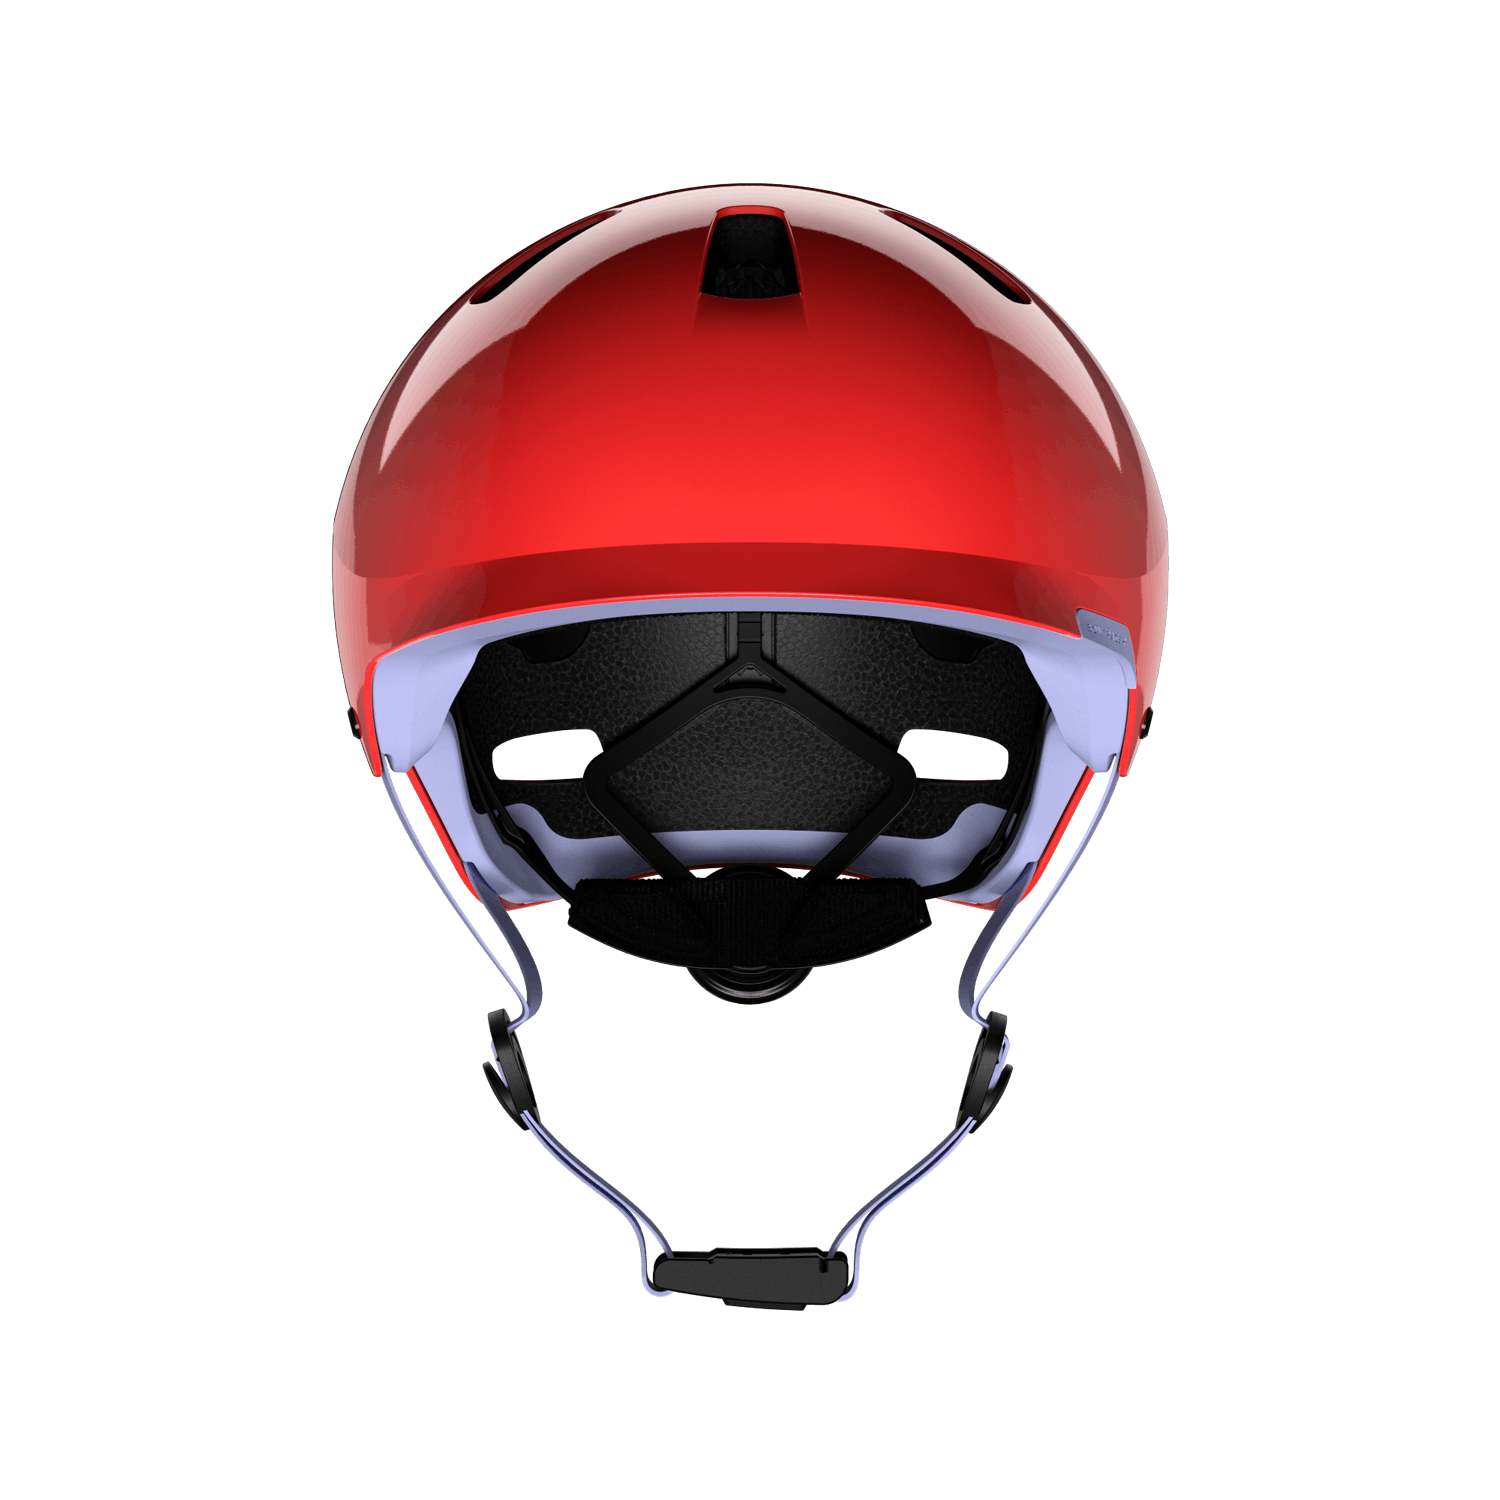 Jet kids red helmet front view